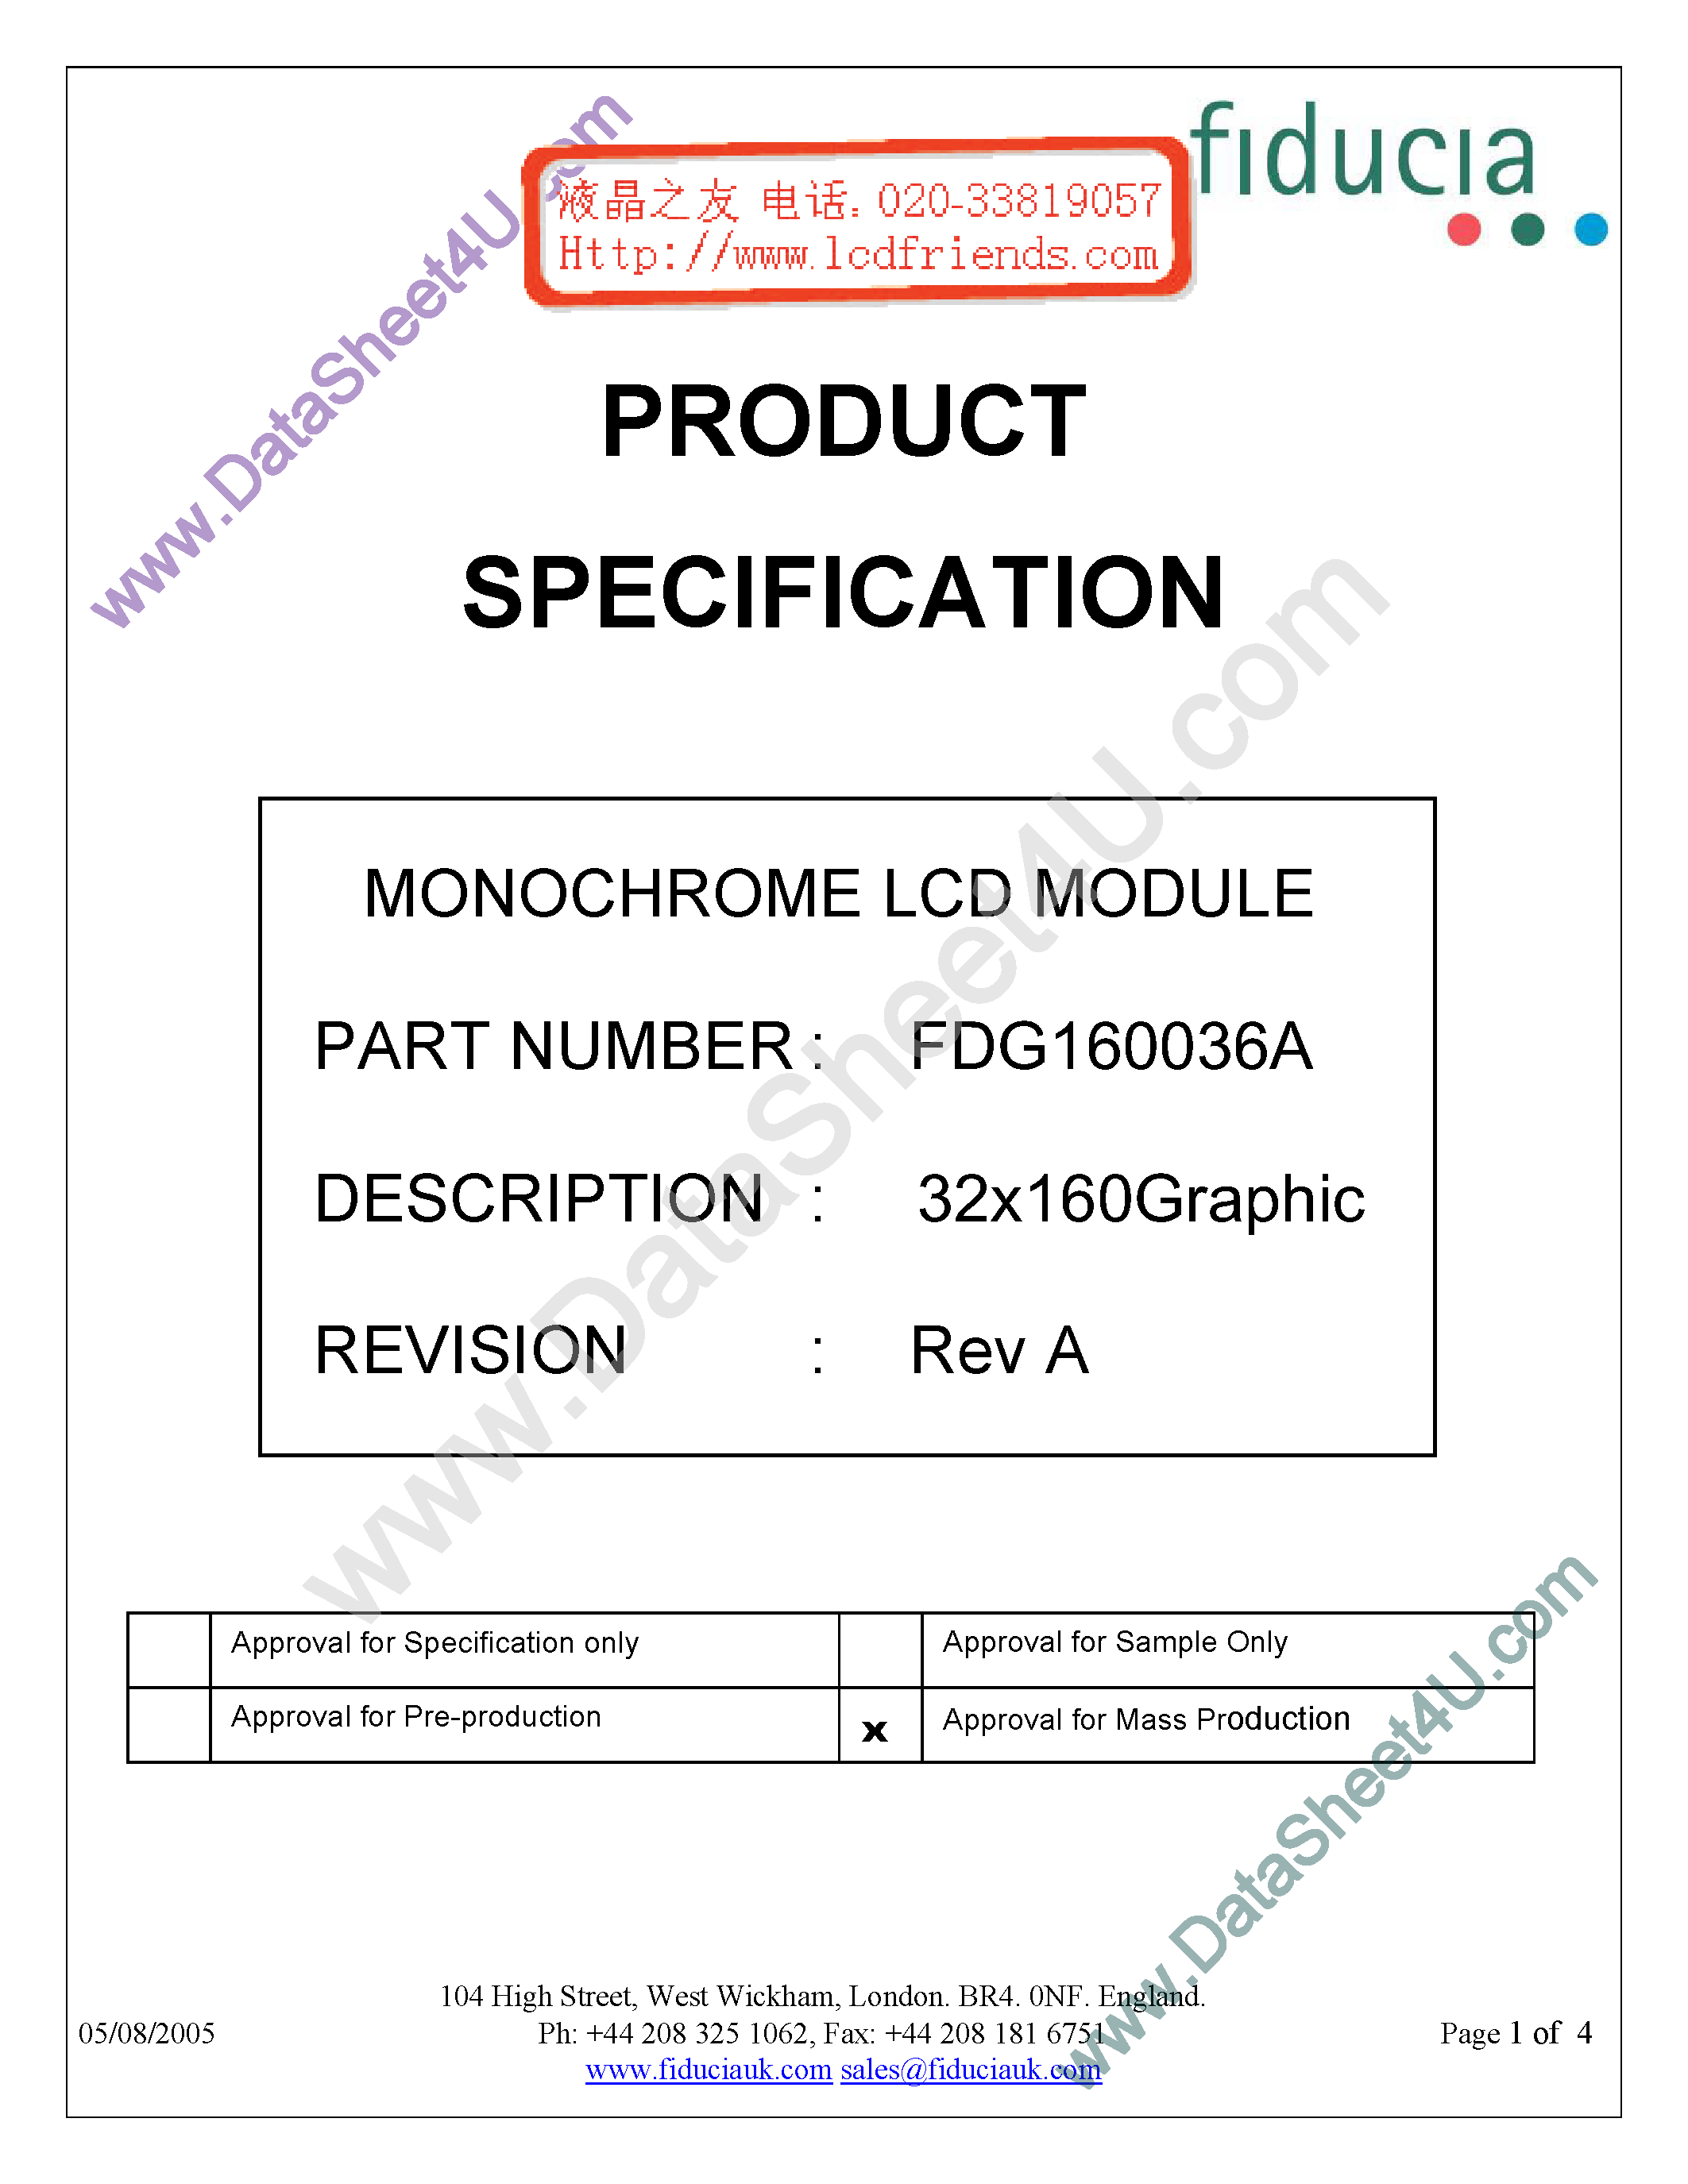 Даташит FDG160036A-Monochrome Lcd Module страница 1